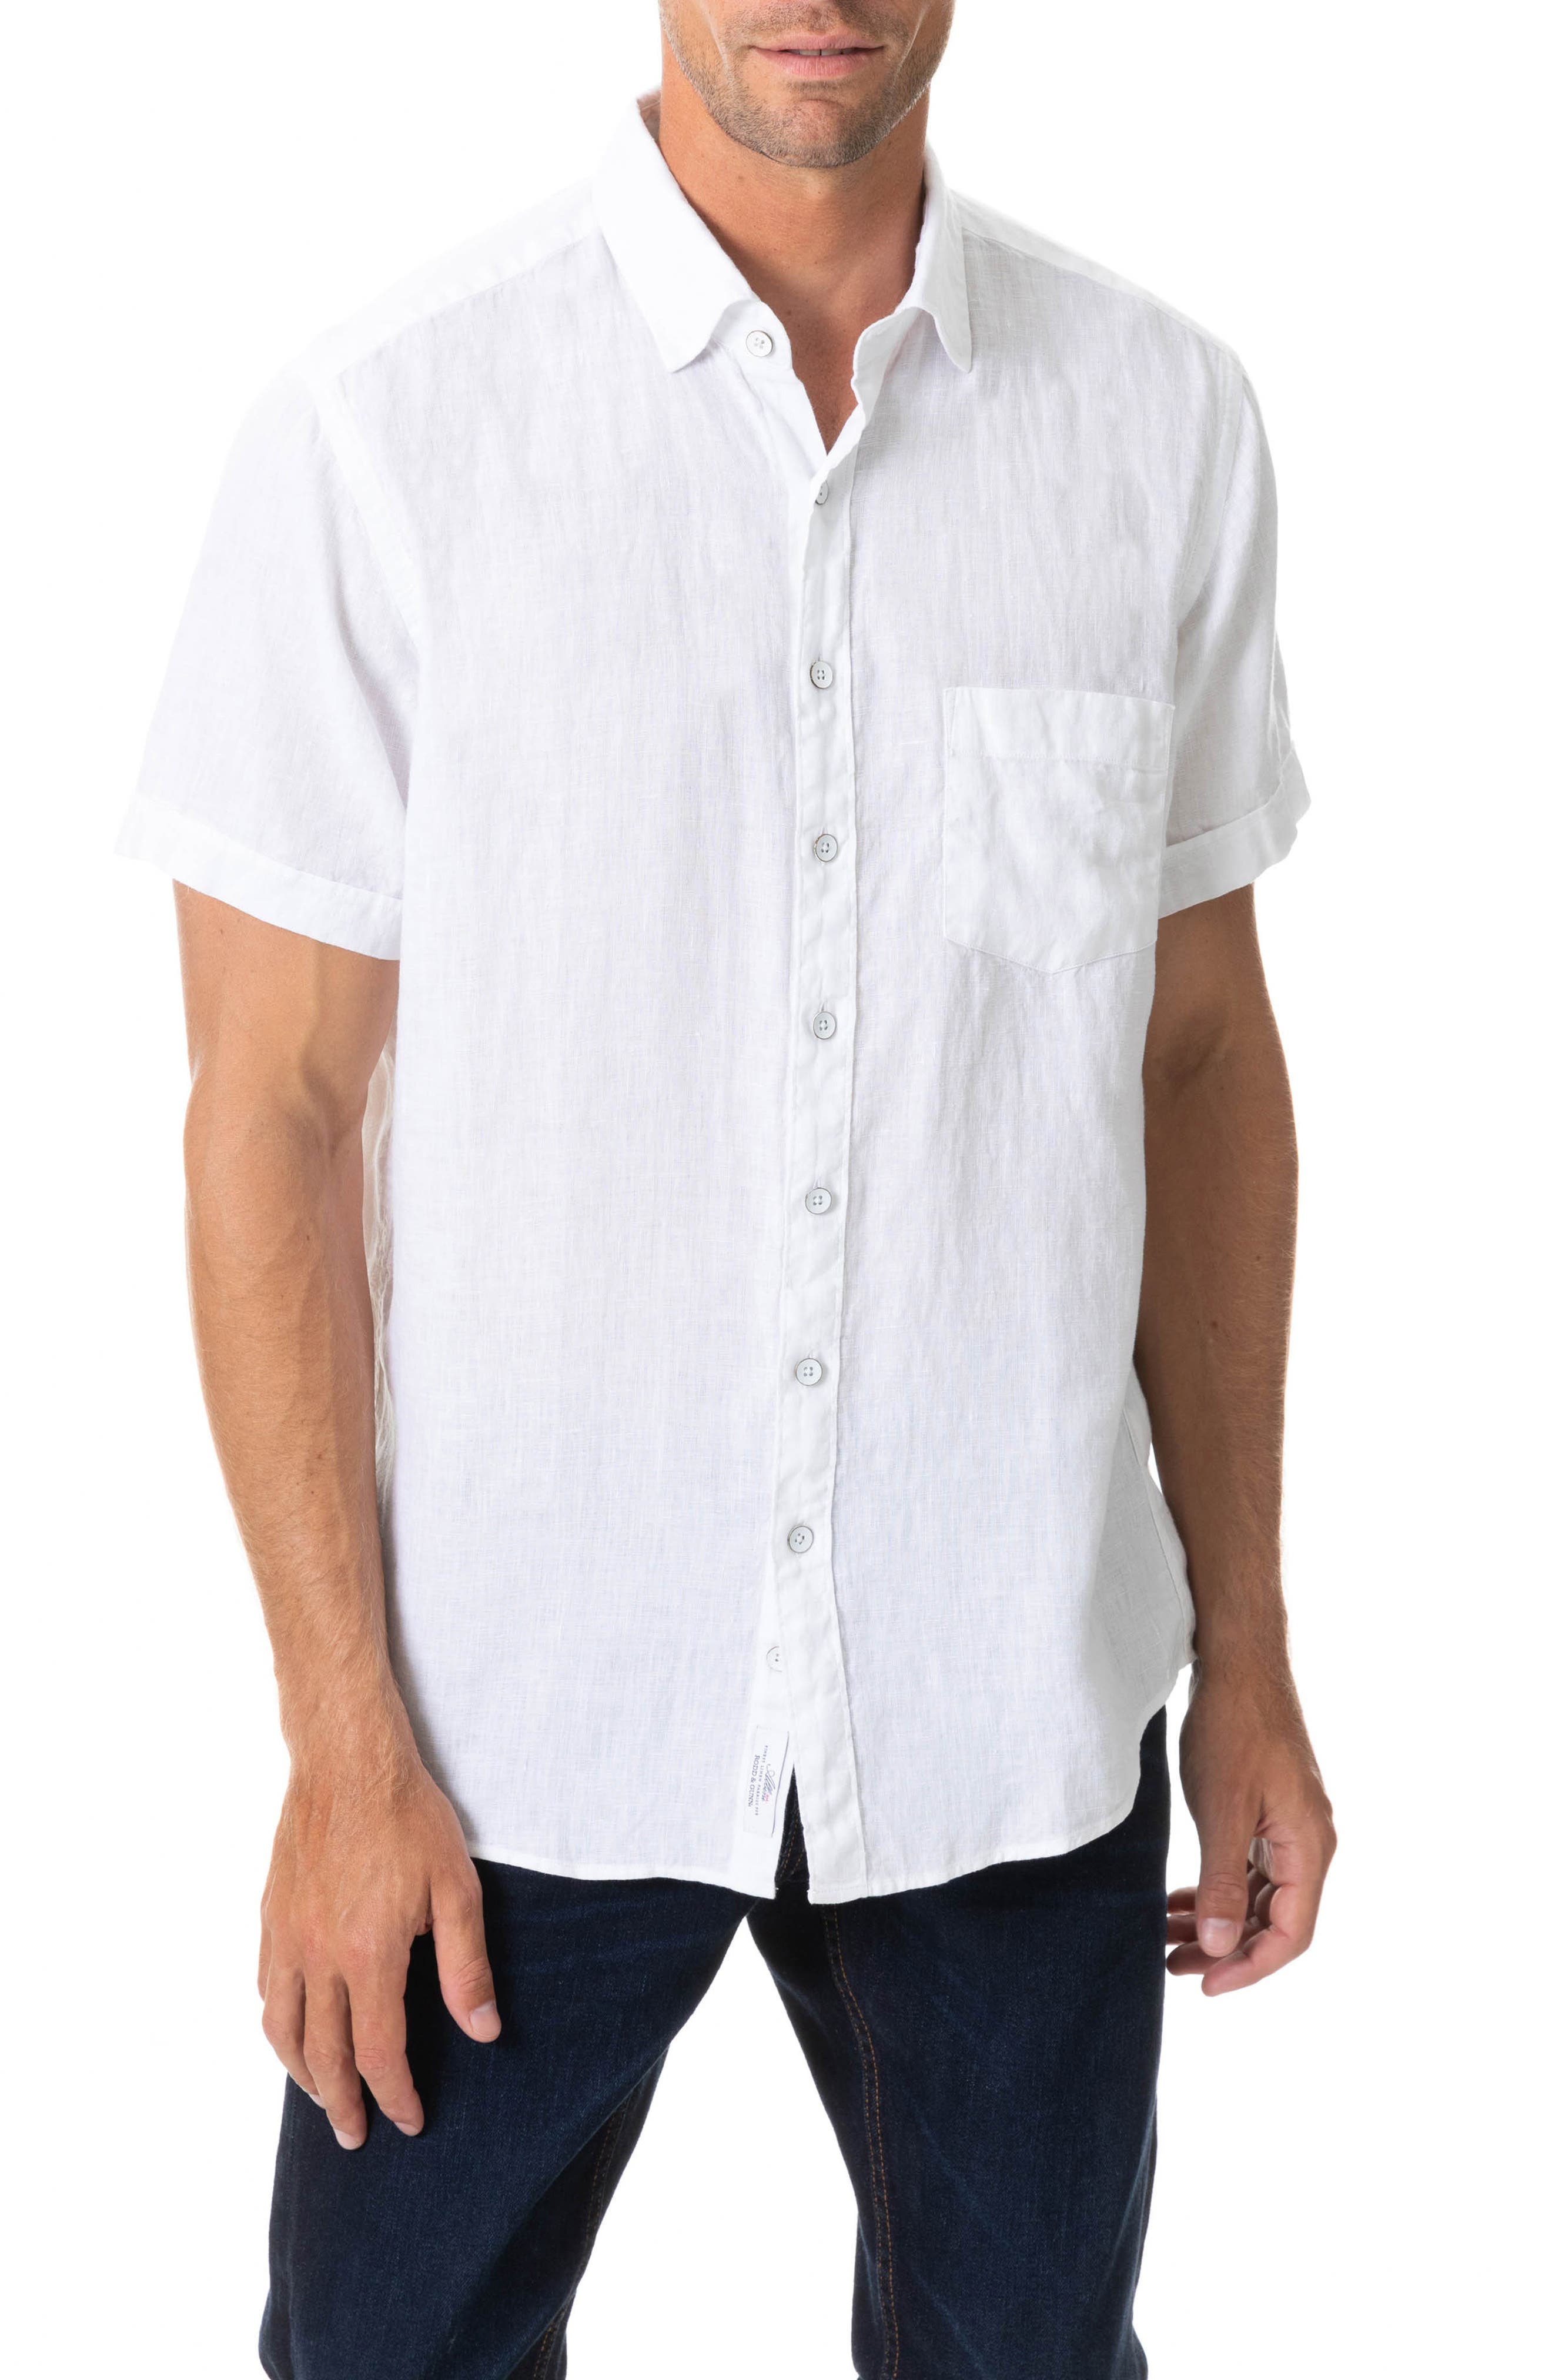 2x New Mens Short Sleeve Shirt Button Plain Smart Formal Business Work Dress Top 